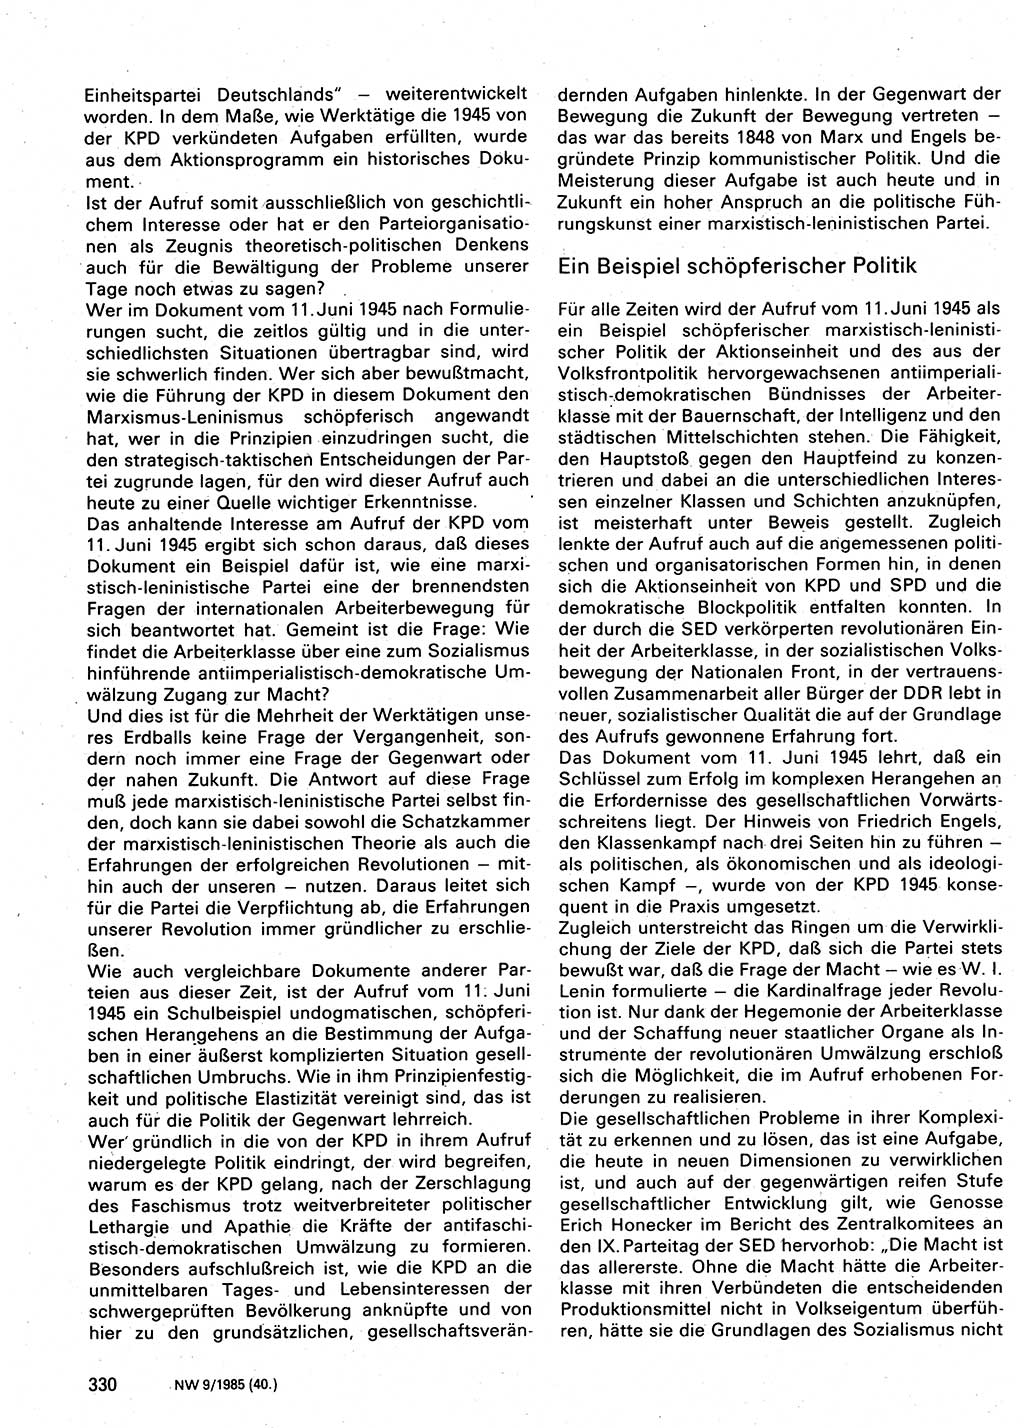 Neuer Weg (NW), Organ des Zentralkomitees (ZK) der SED (Sozialistische Einheitspartei Deutschlands) für Fragen des Parteilebens, 40. Jahrgang [Deutsche Demokratische Republik (DDR)] 1985, Seite 330 (NW ZK SED DDR 1985, S. 330)